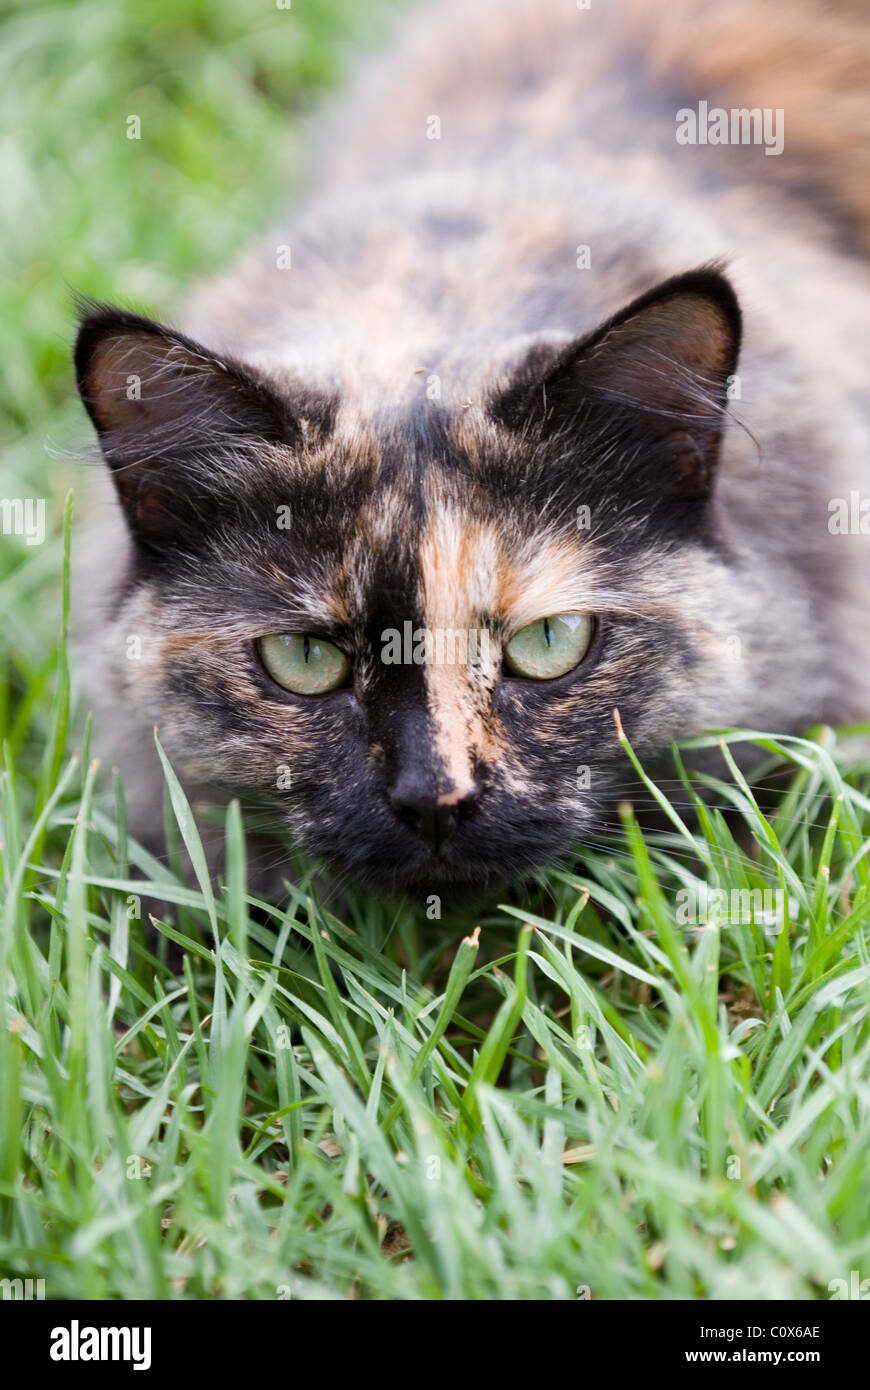 Long haired cat allongé dans l'herbe Banque D'Images